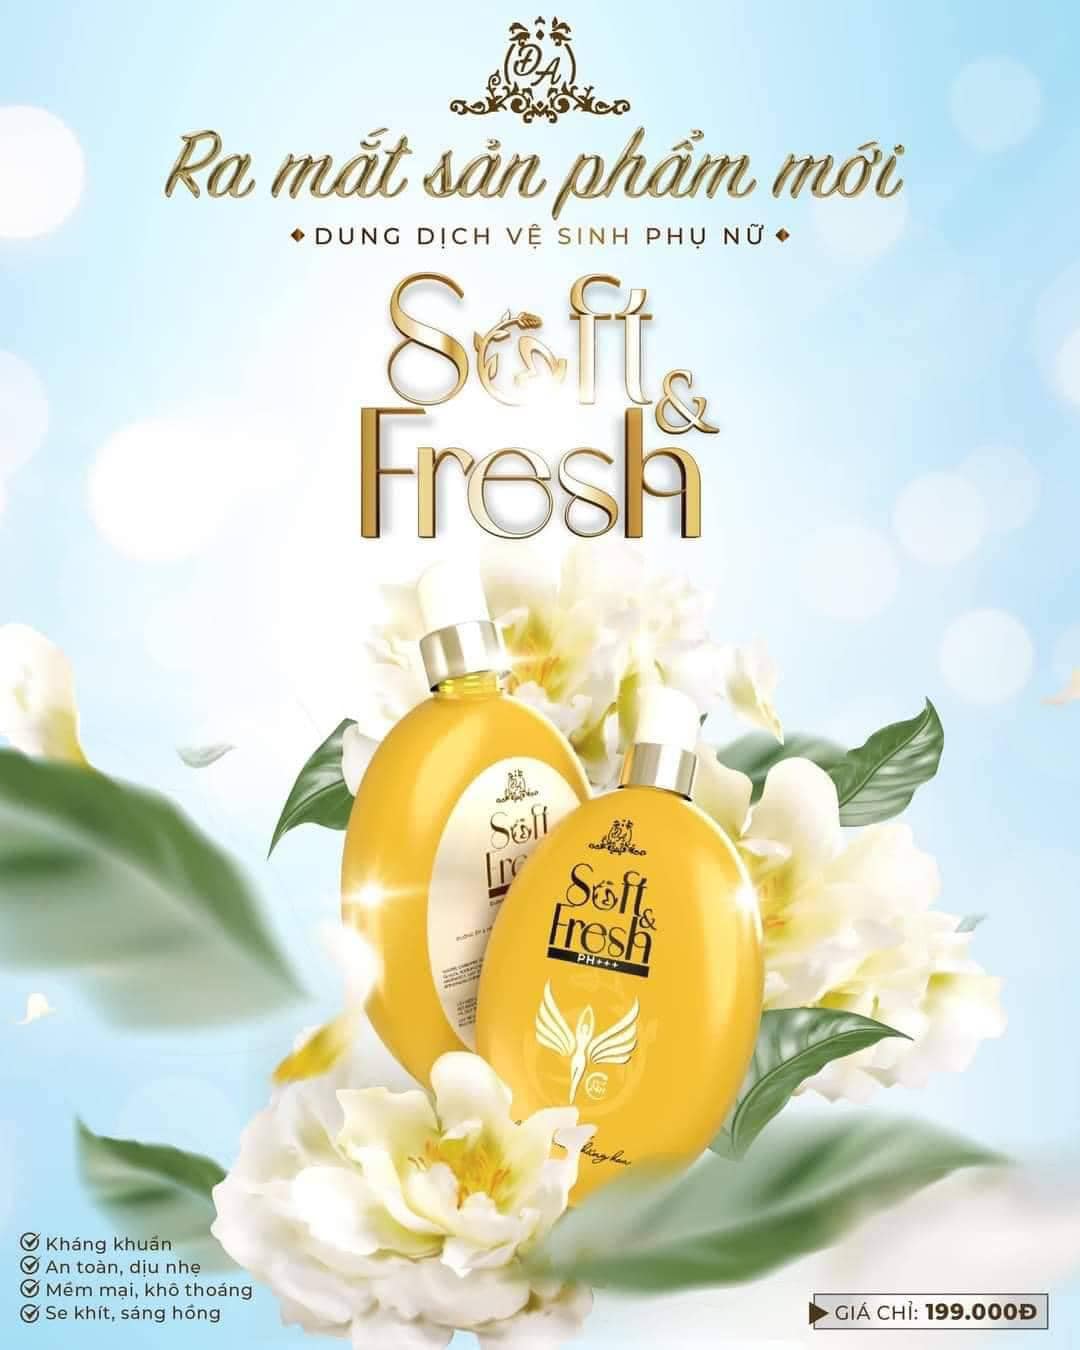 Dung Dịch Vệ Sinh Phụ Nữ Đông Anh Collagen X3 Soft Fresh